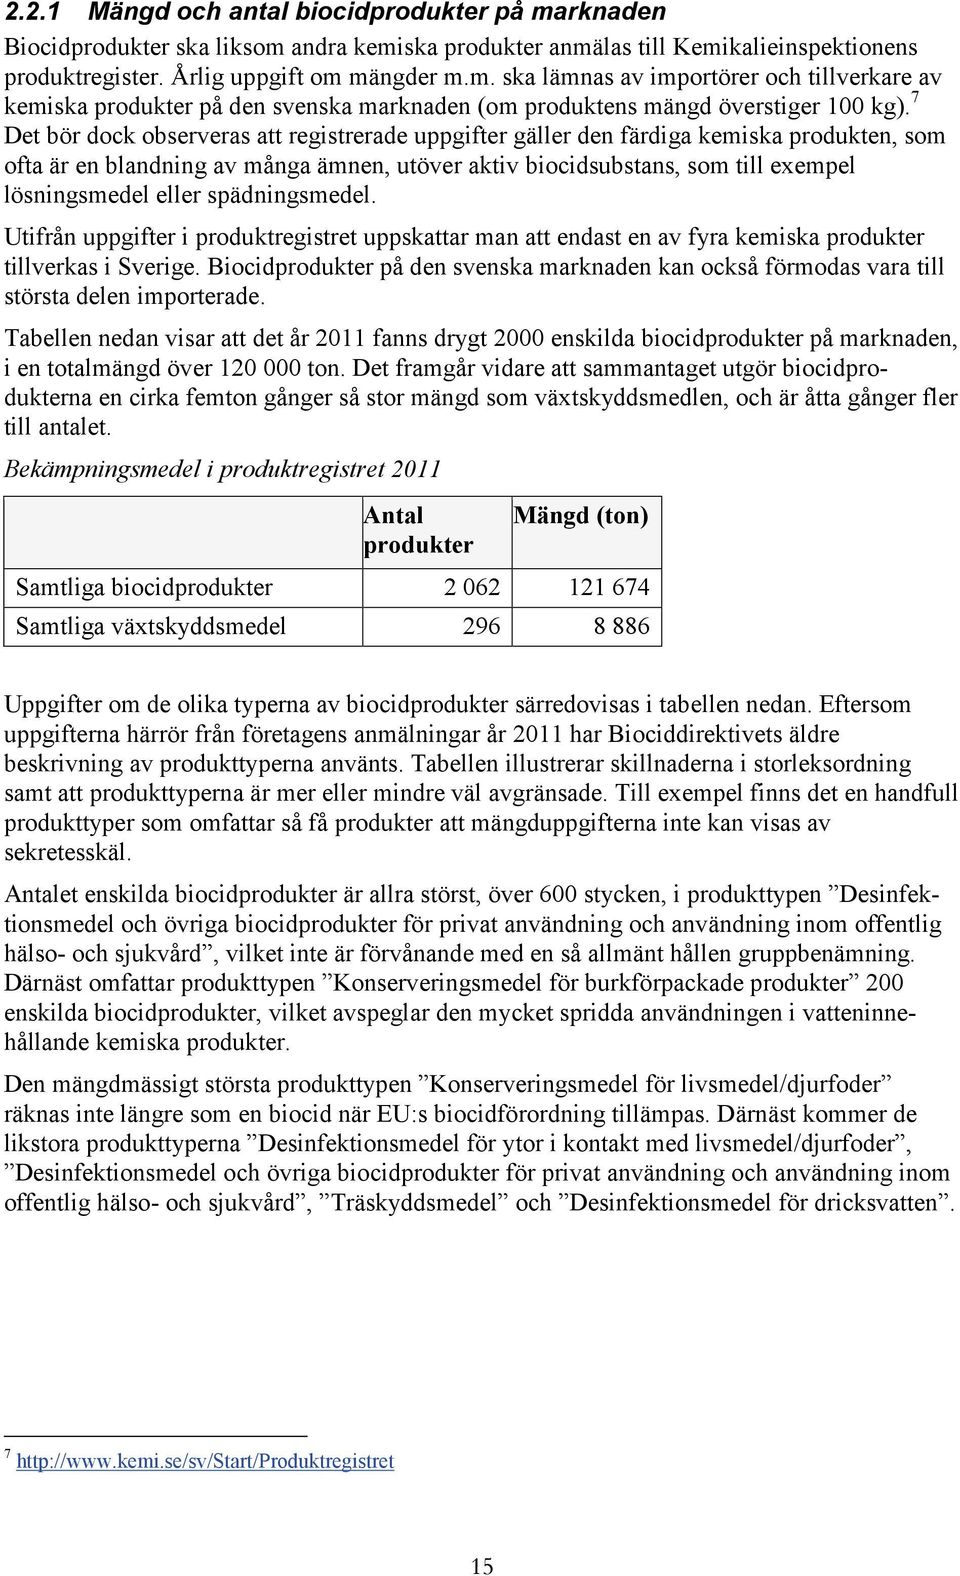 spädningsmedel. Utifrån uppgifter i produktregistret uppskattar man att endast en av fyra kemiska produkter tillverkas i Sverige.